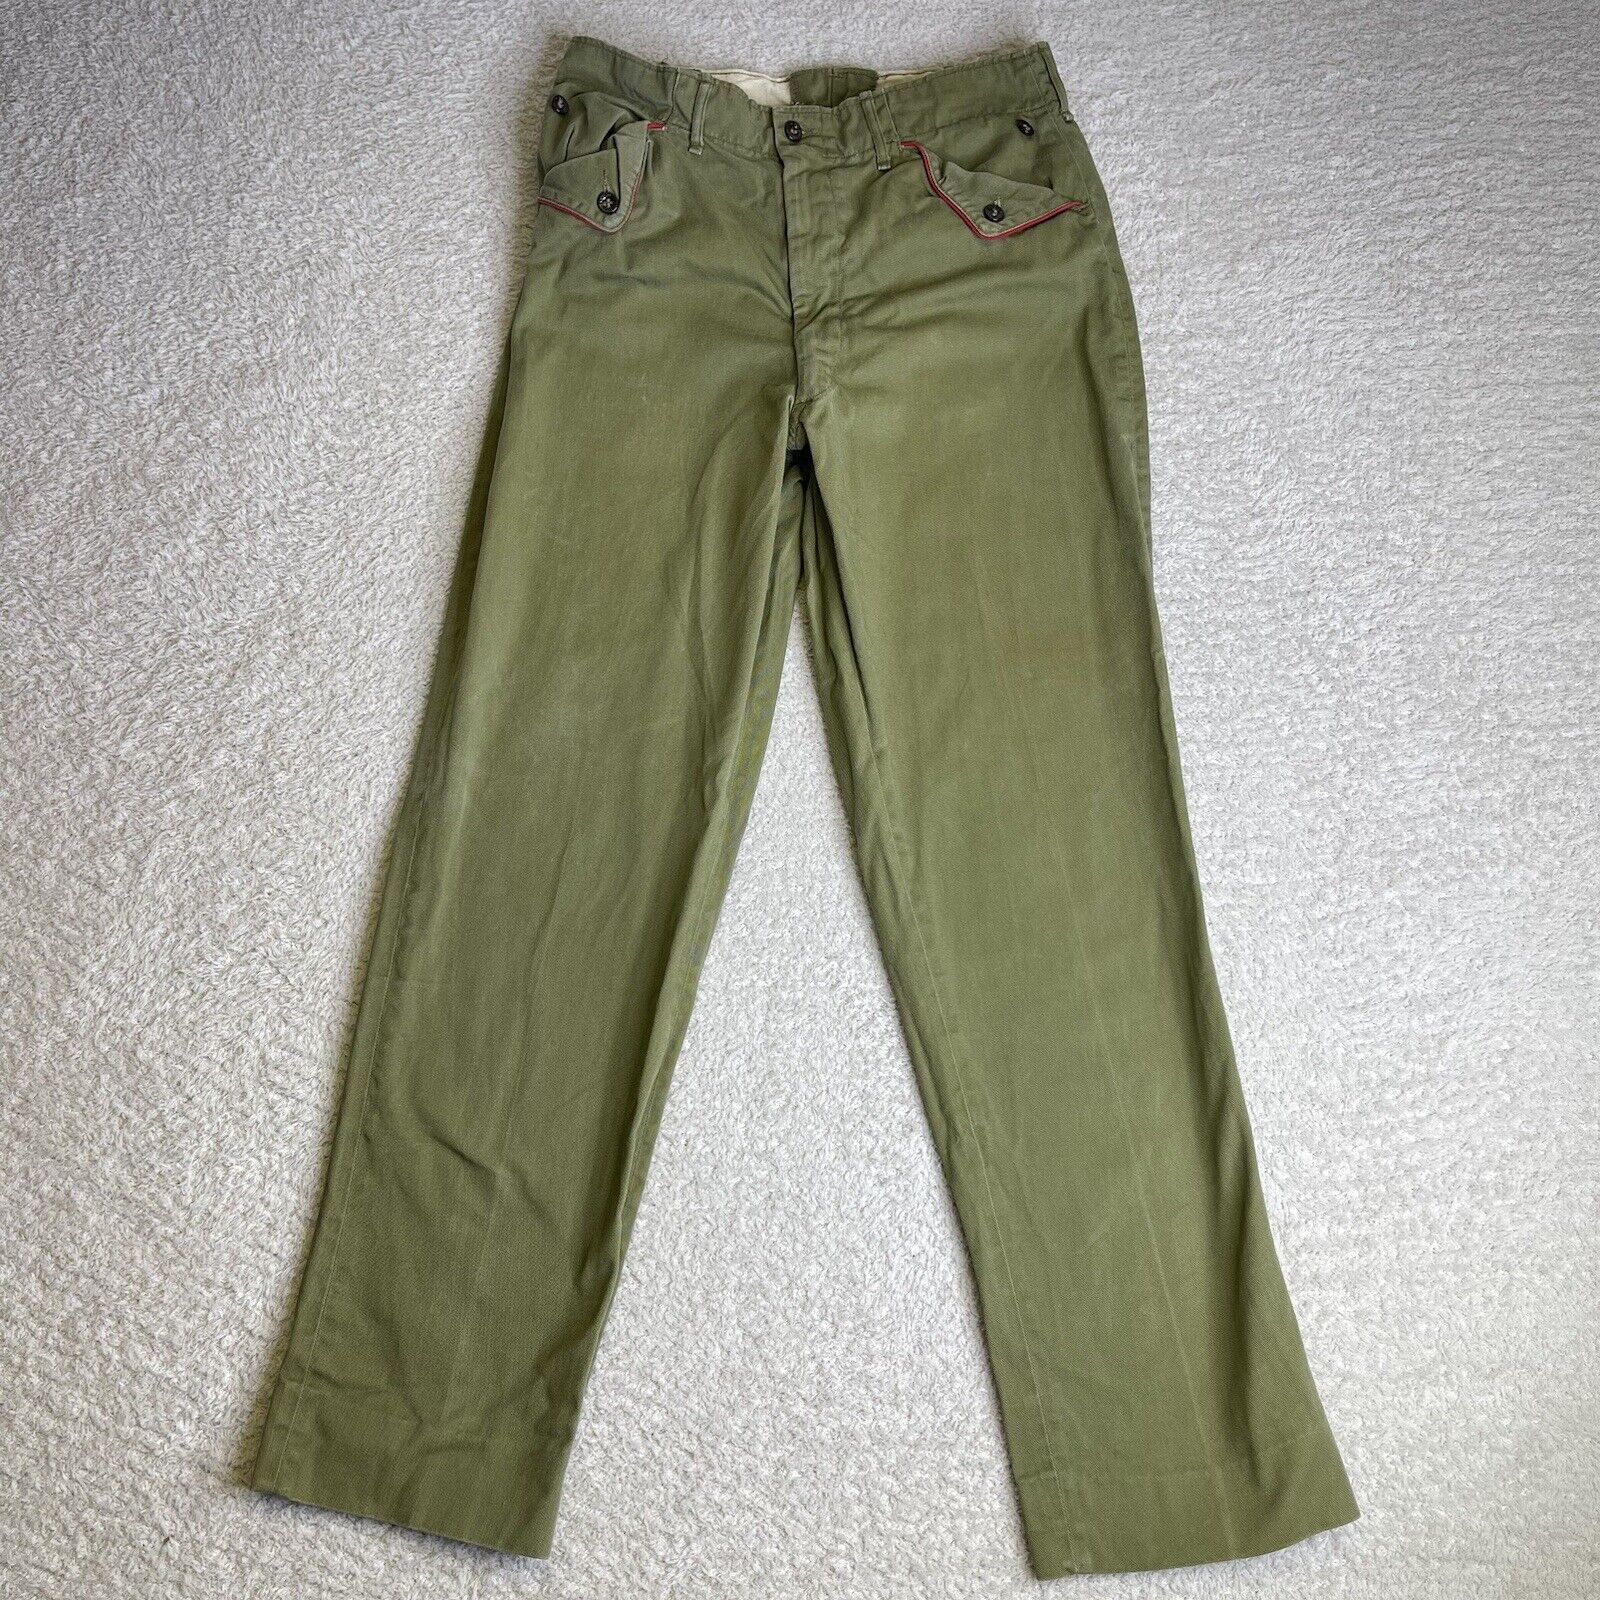 Vintage 60s BSA Boy Scouts Uniform Pants 29x29 Army Green Red Trim 650 Talon Zip